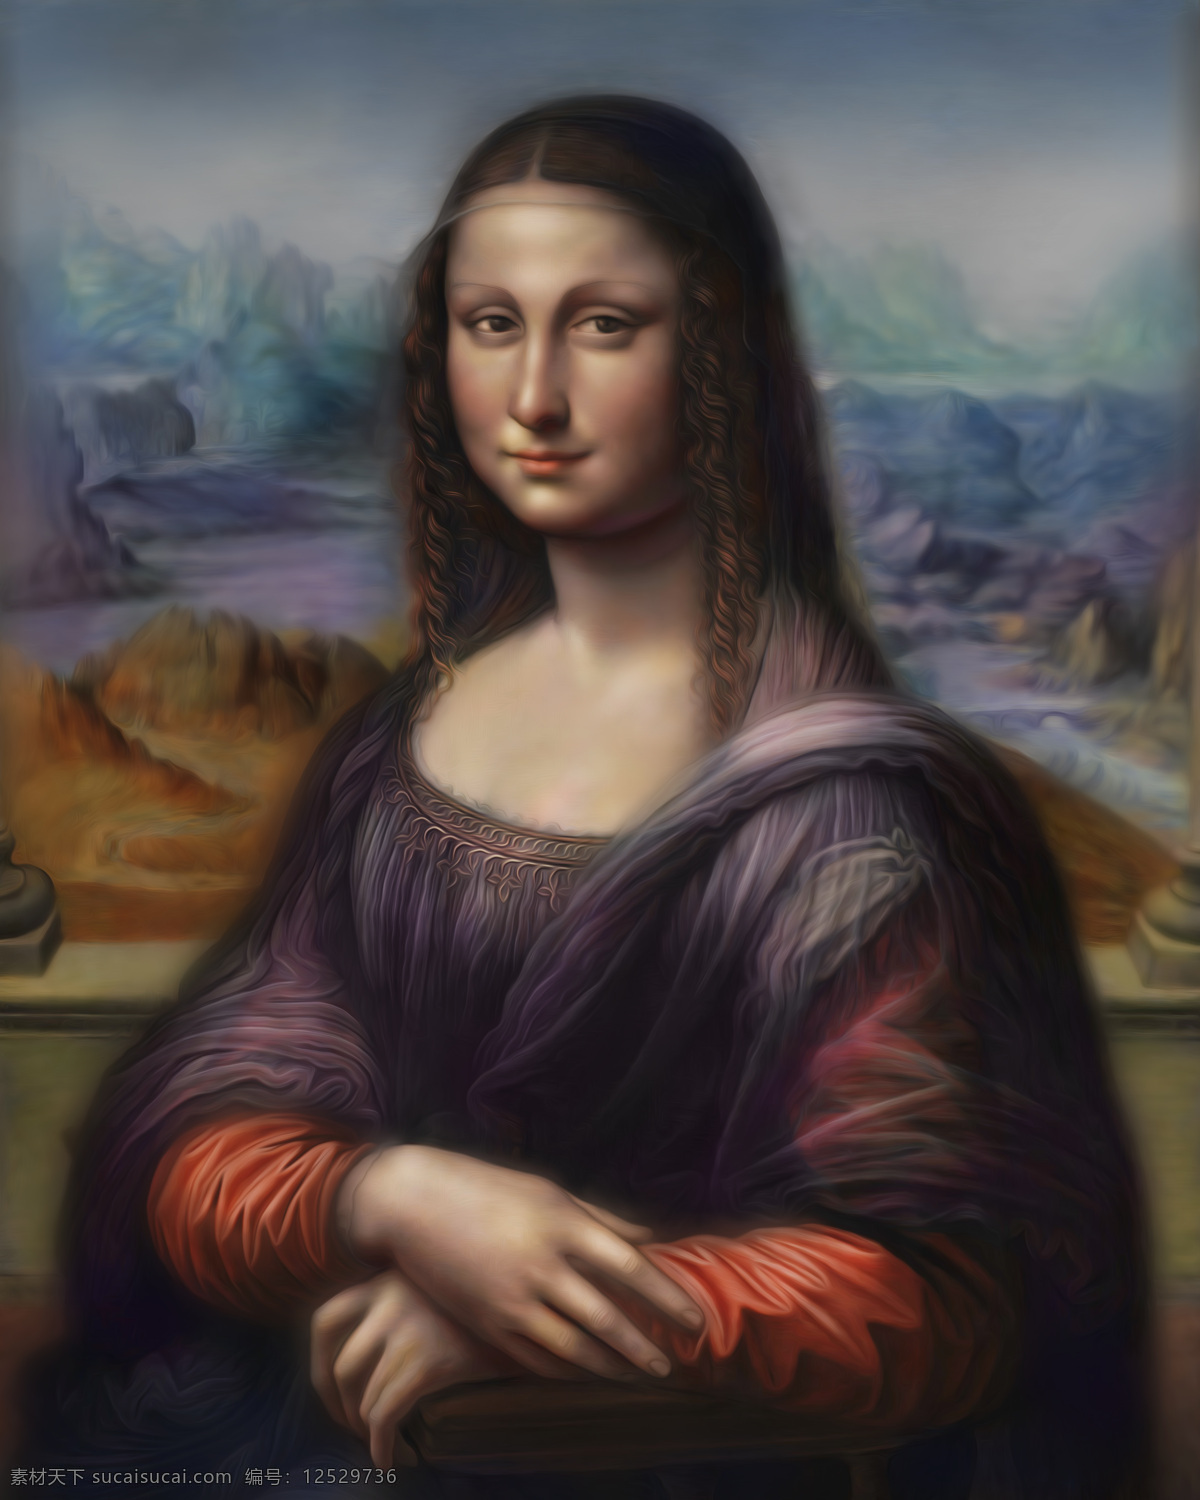 蒙娜丽莎 微笑 肖像 传统艺术 绘画 人像 数字 美女 明星偶像 人物图库 绘画书法 文化艺术